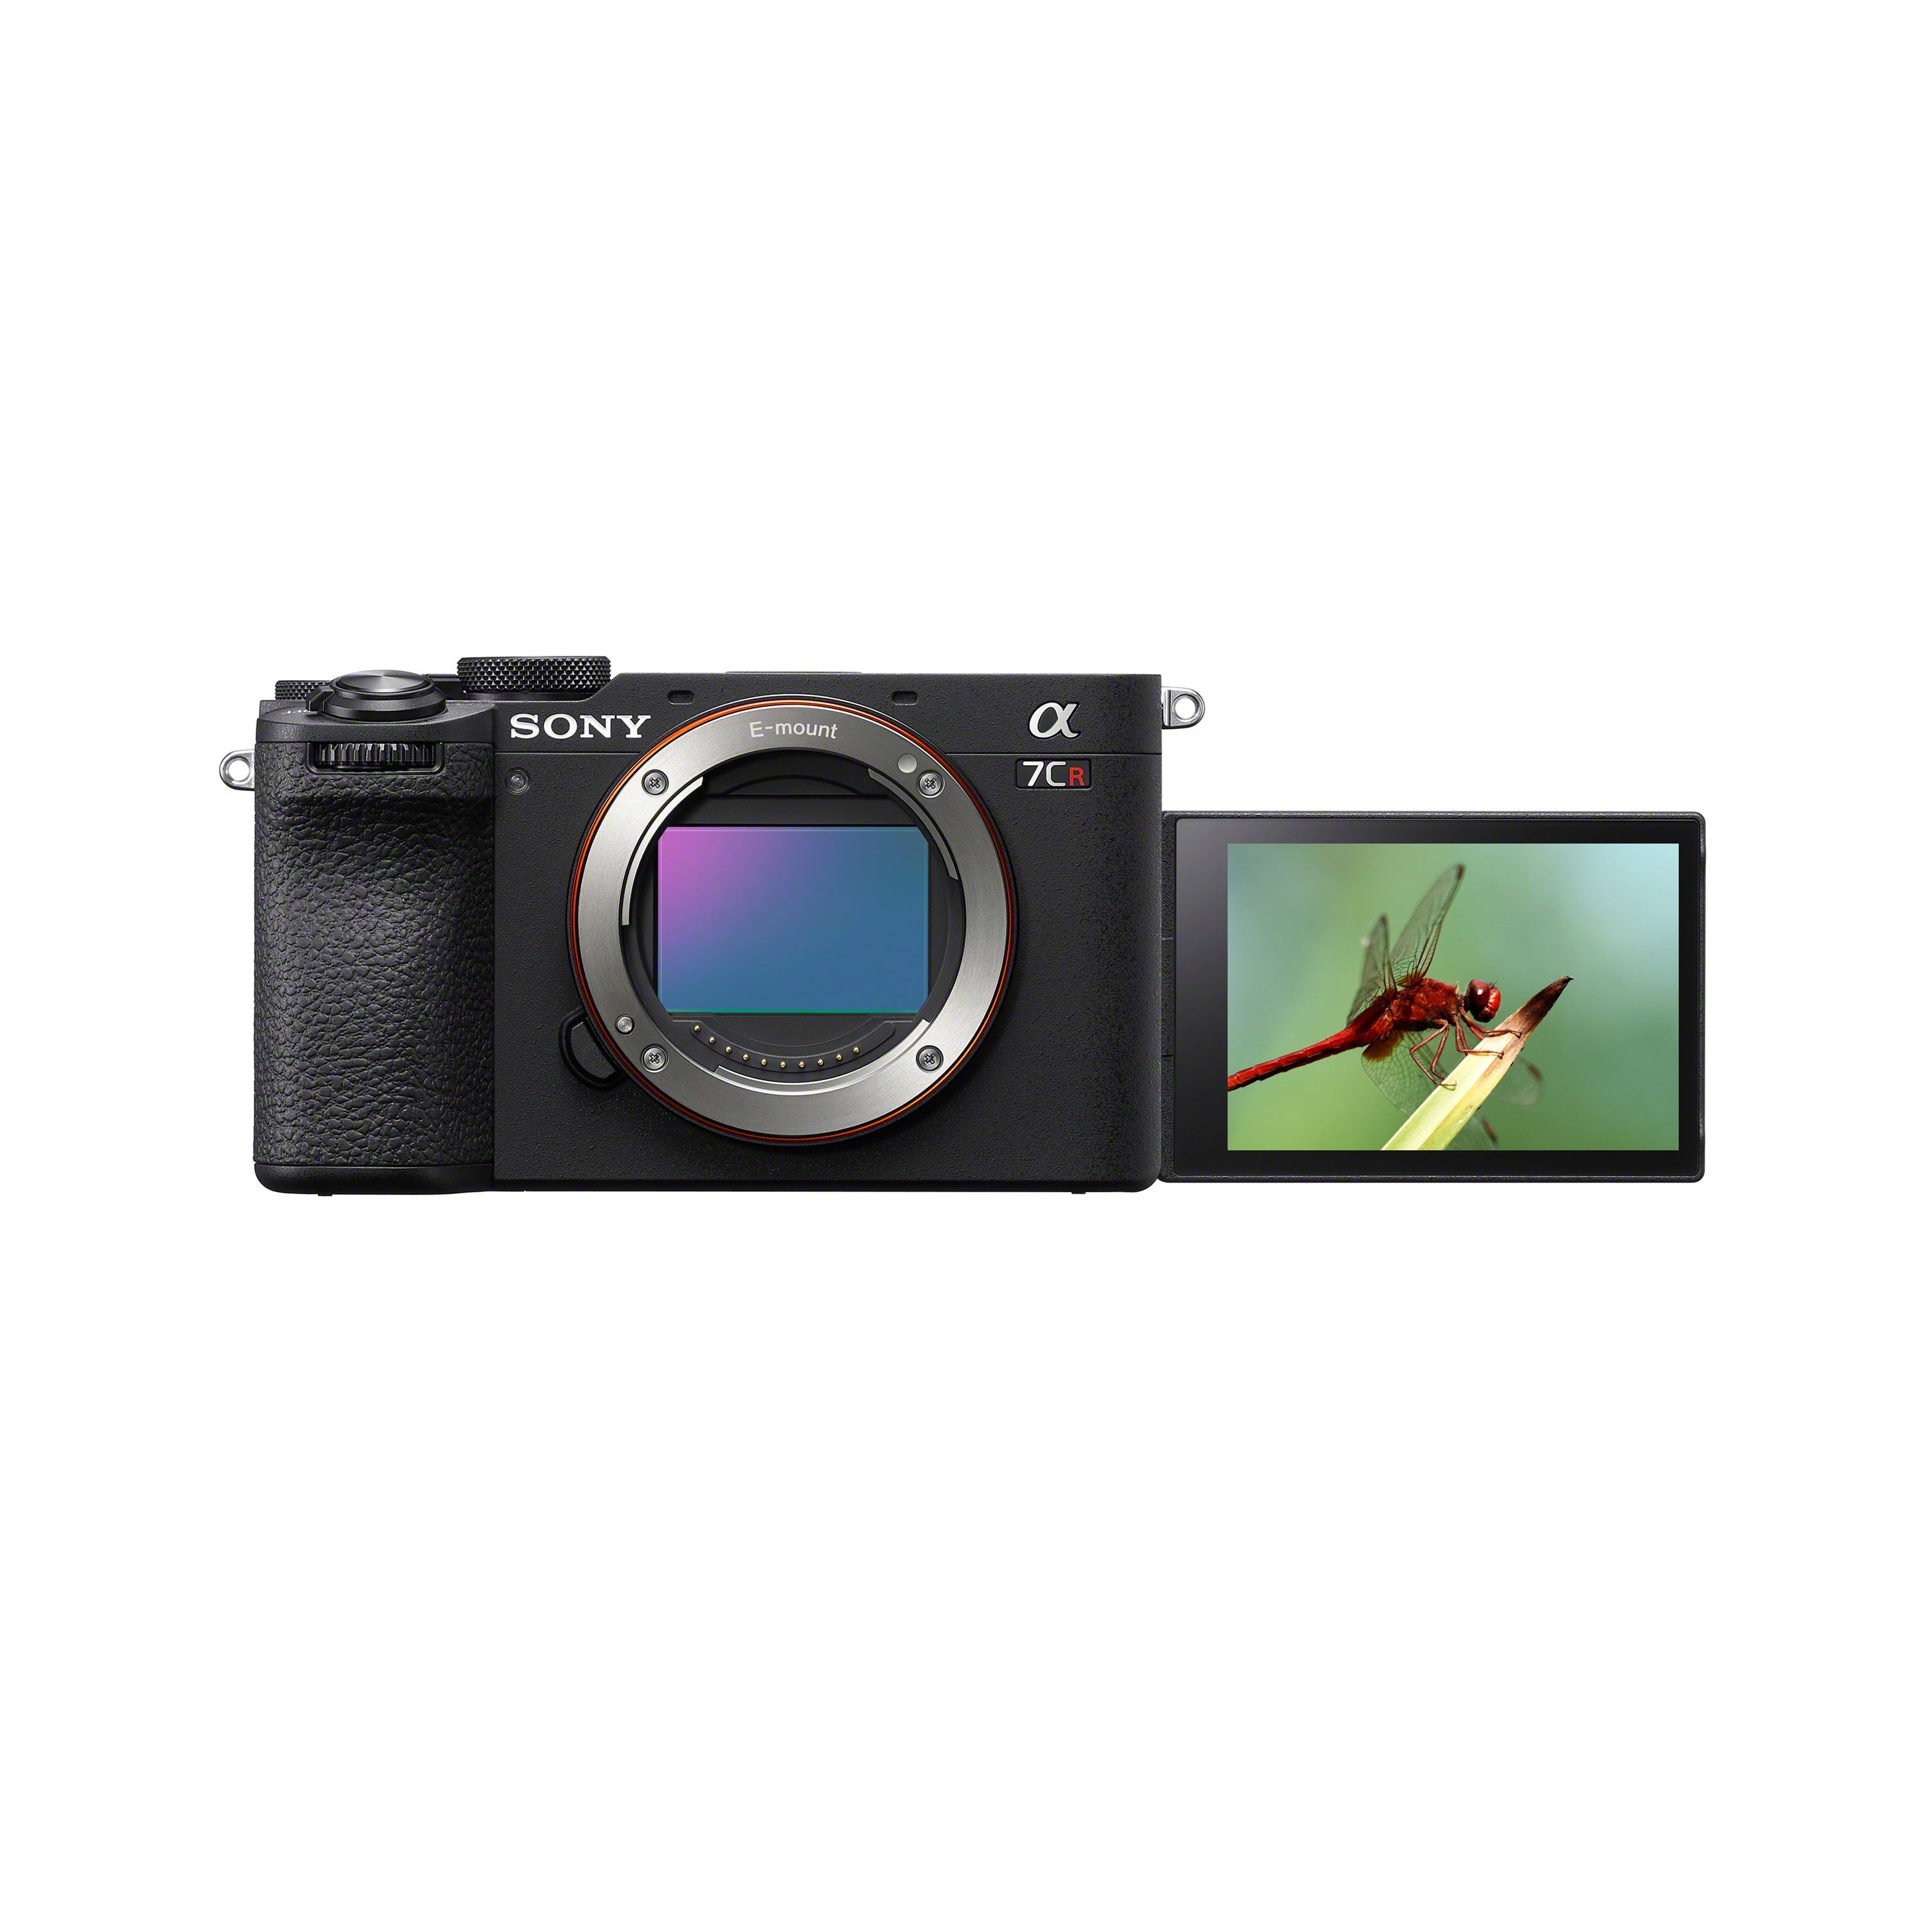 Sony Alpha 7CR – Full-frame Interchangeable Lens Hybrid Camera